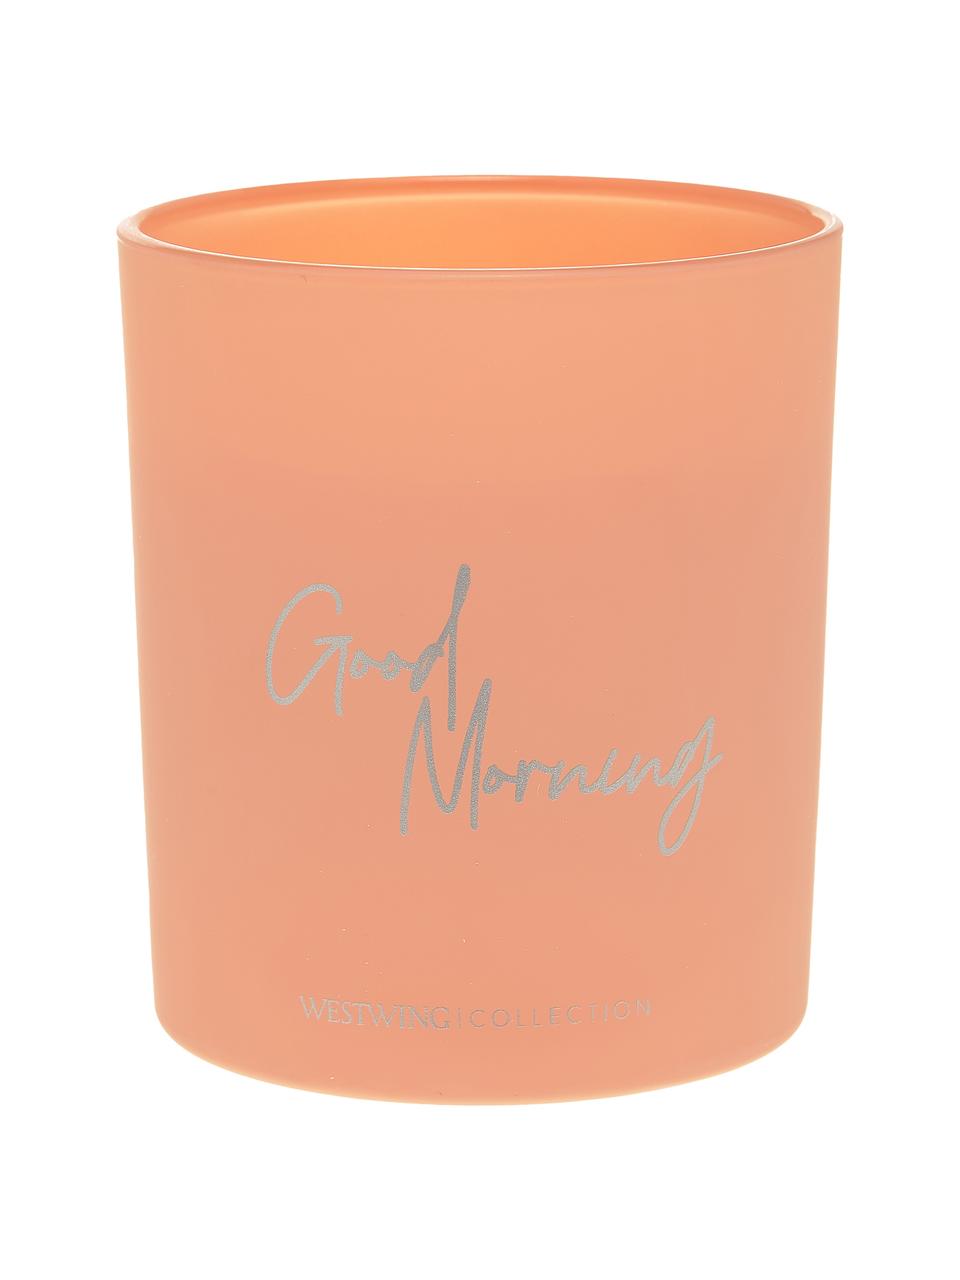 Duftkerze Good Morning: Floral Amber, Behälter: Glas, Pink, Ø 9 x H 10 cm